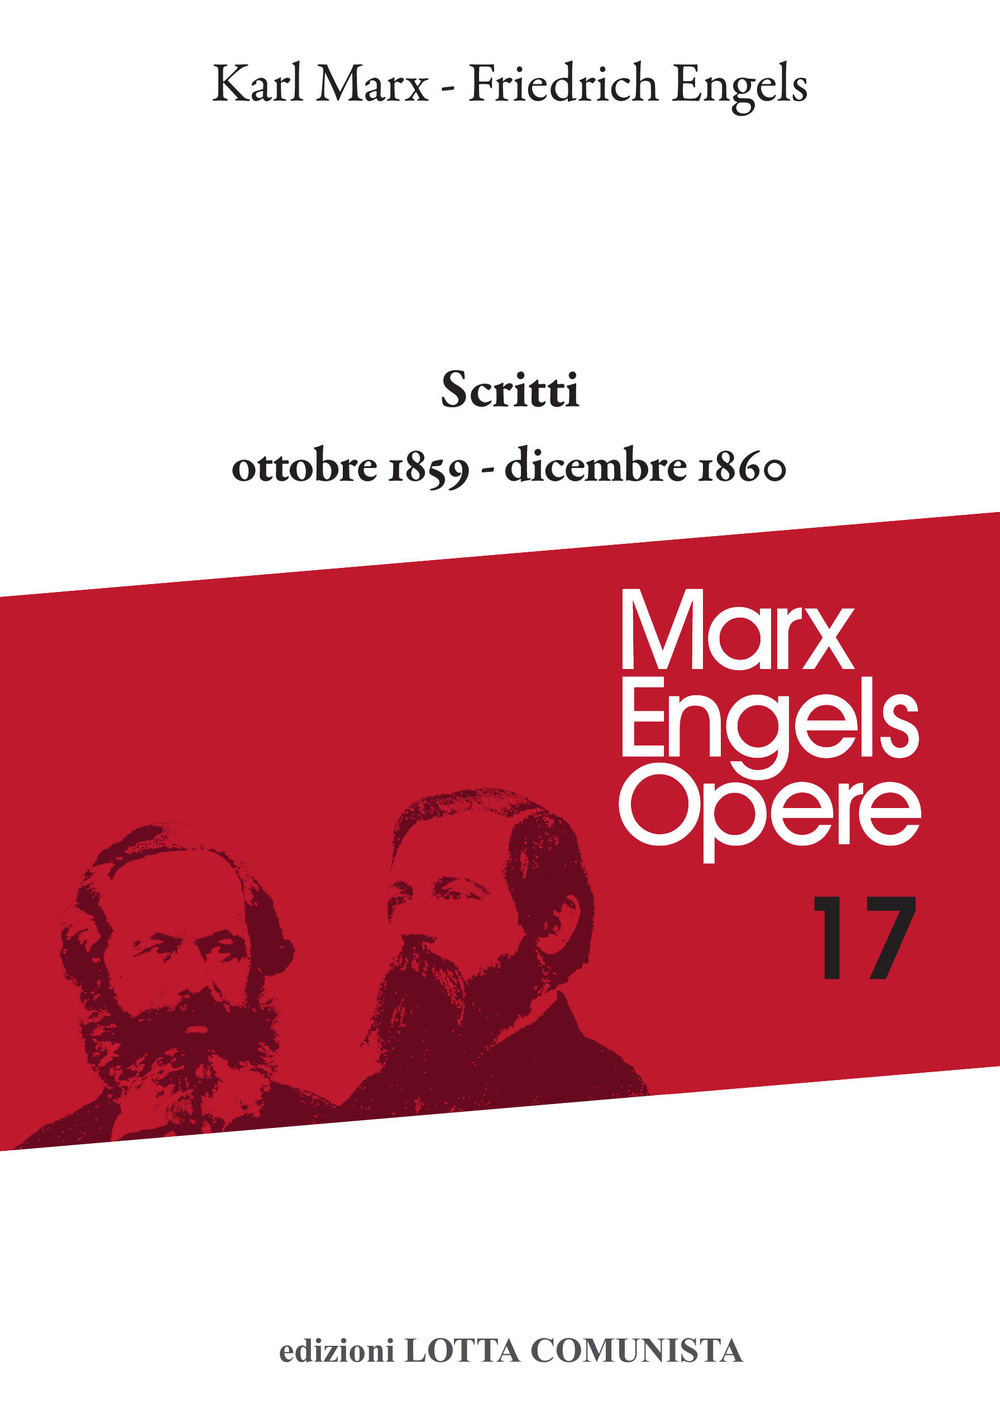 Libri Karl Marx / Friedrich Engels - Opere Complete Vol 17 NUOVO SIGILLATO, EDIZIONE DEL 23/07/2021 SUBITO DISPONIBILE